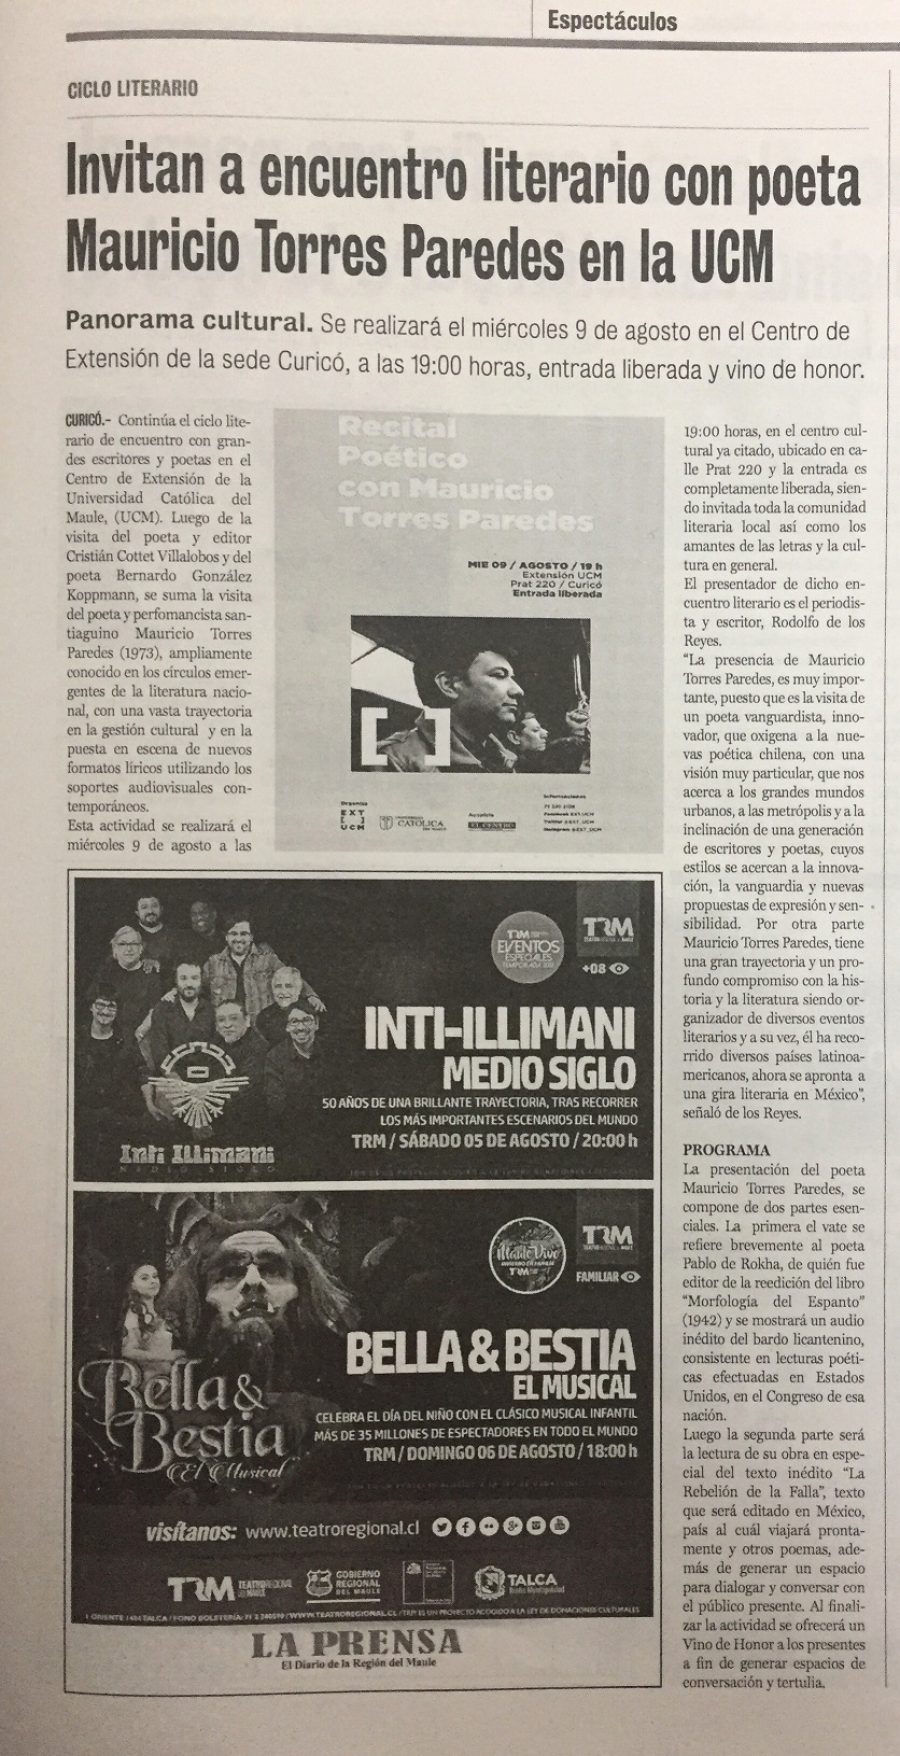 04 de agosto en Diario La Prensa: “Invitan a encuentro literario con poeta Mauricio Torres Paredes en la UCM”